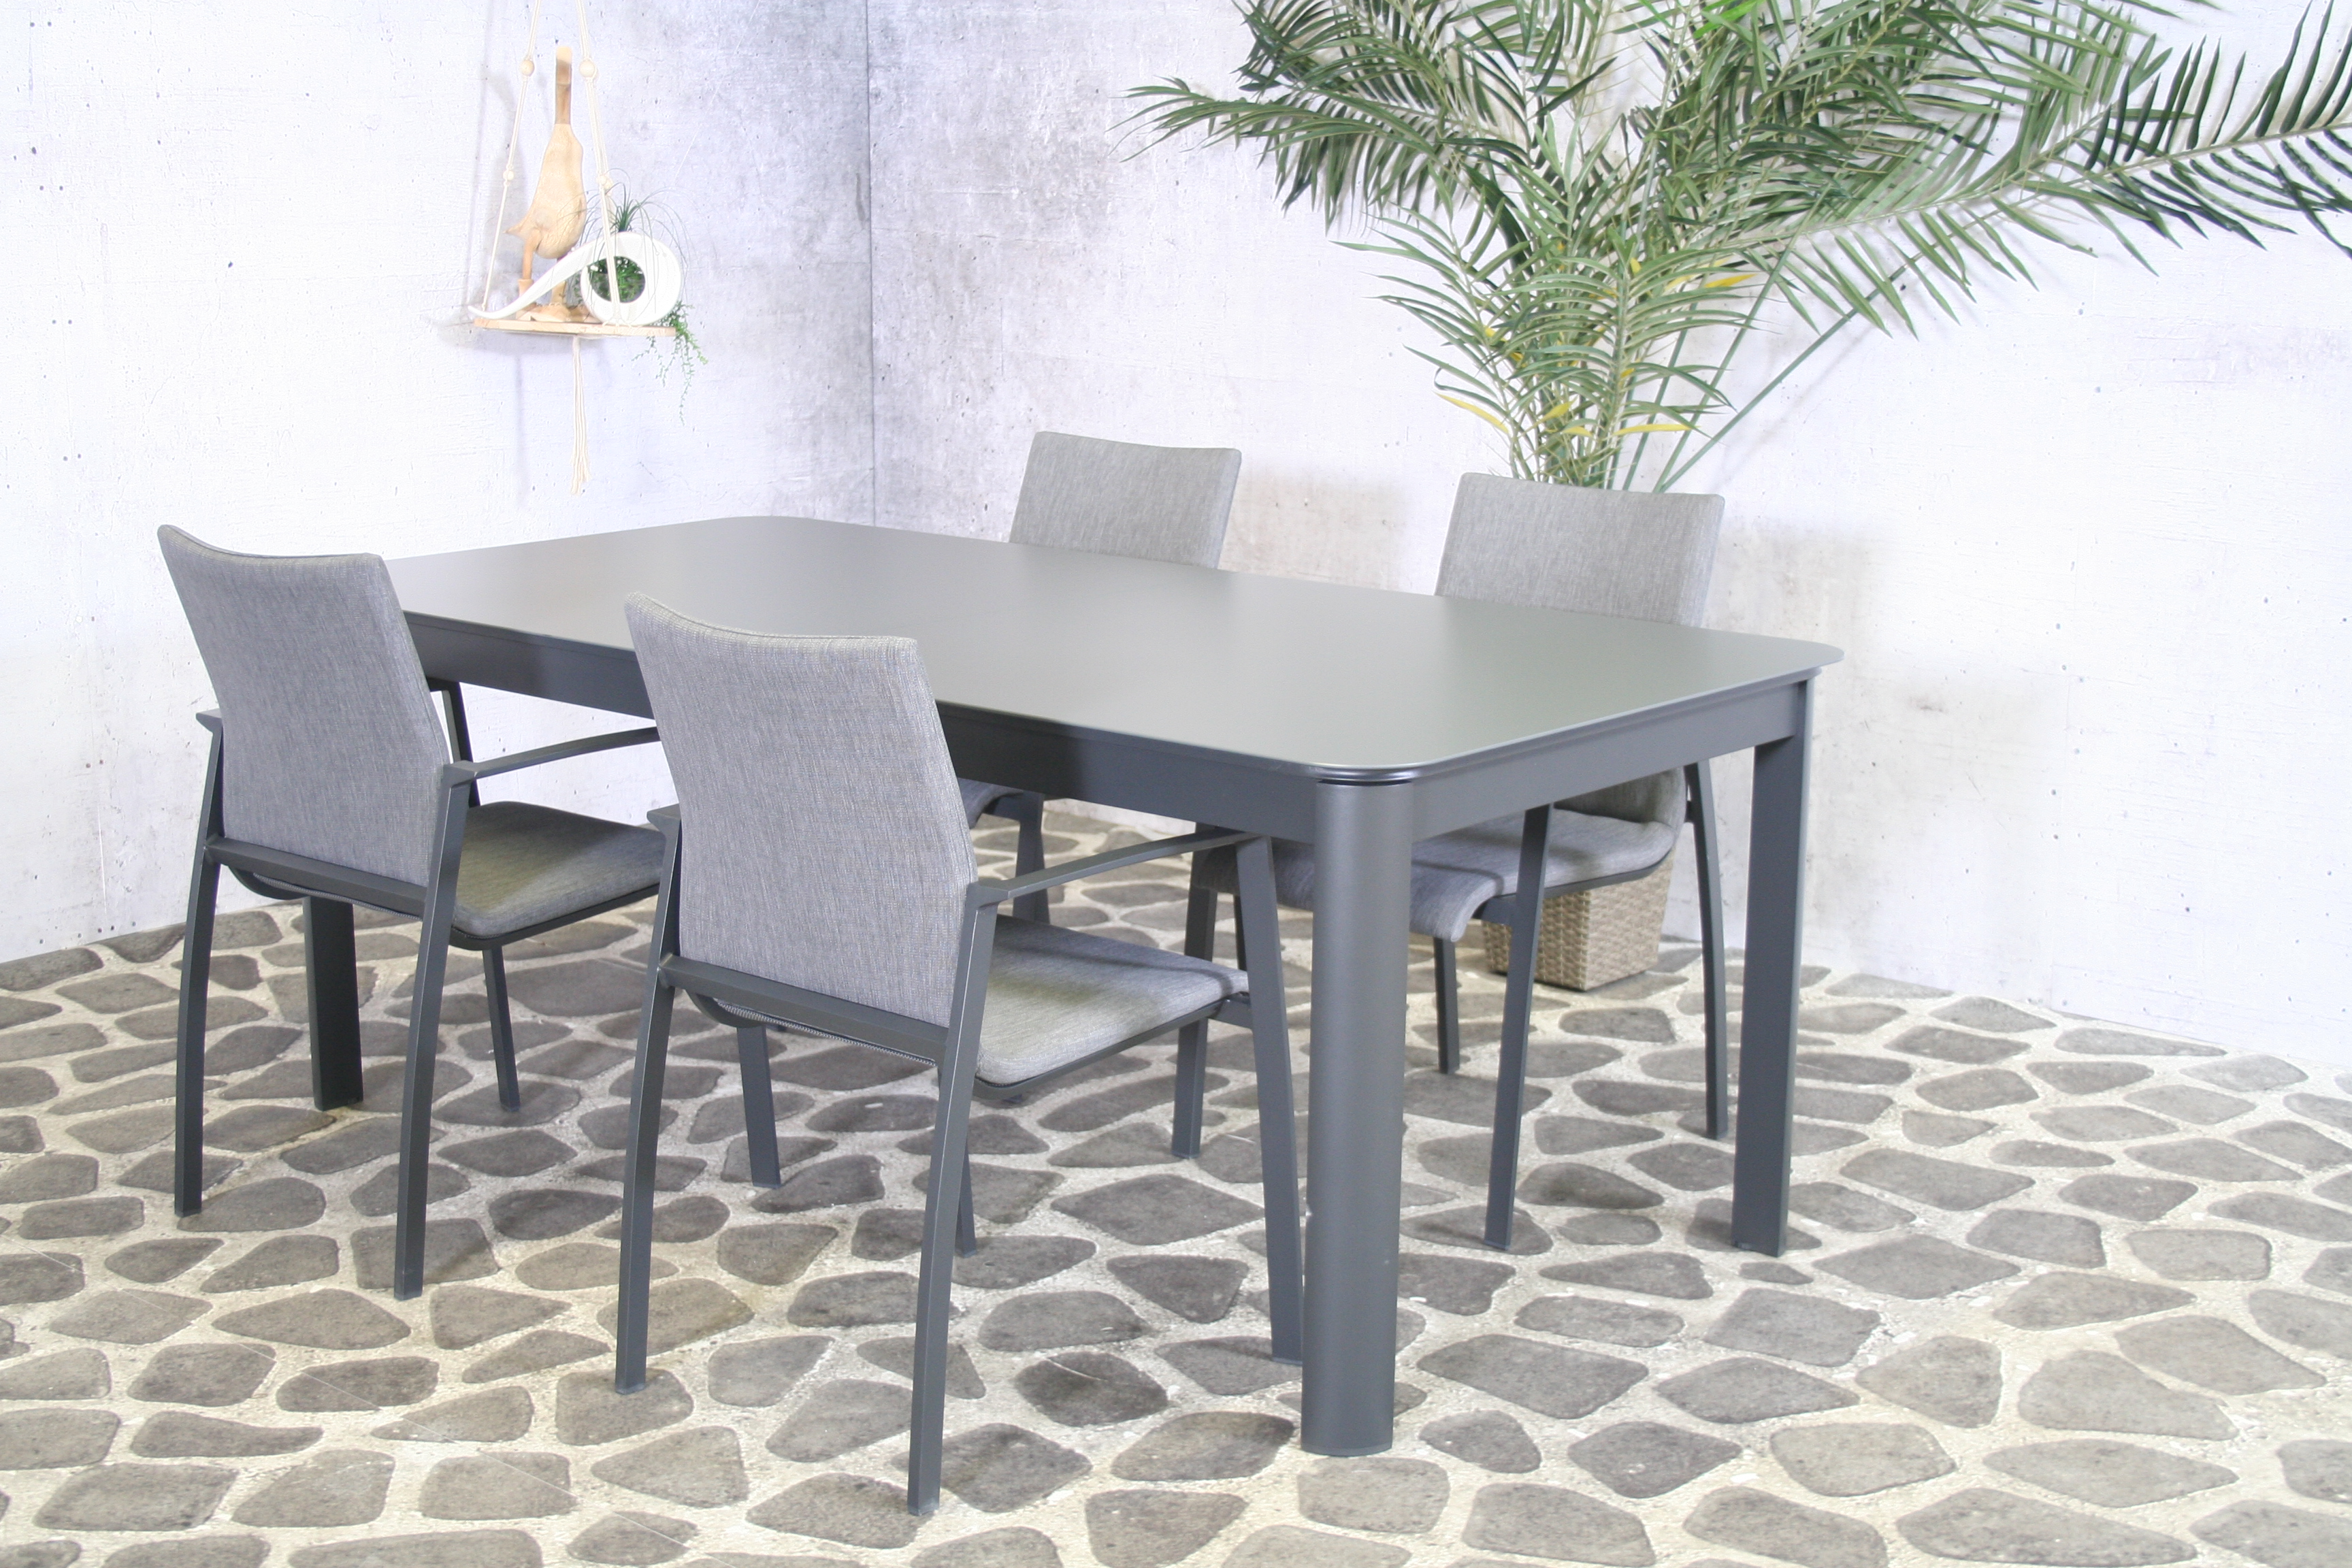 Essgruppe Solero - Tisch 200/300cm x 100cm mit 6 Stapelstühlen Solero